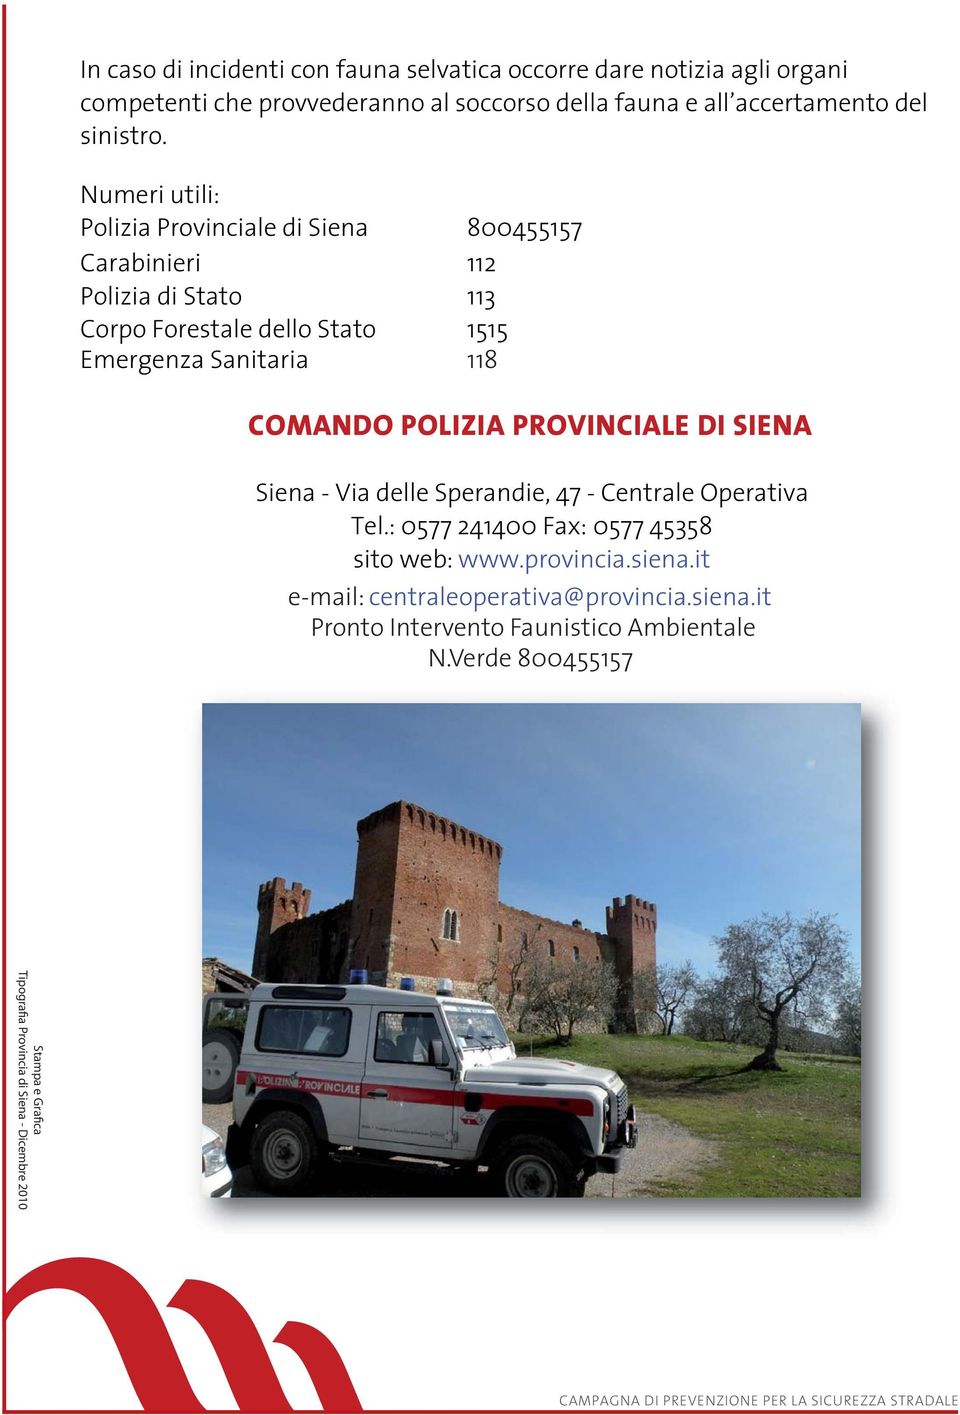 Numeri utili: Polizia Provinciale di Siena 800455157 Carabinieri 112 Polizia di Stato 113 Corpo Forestale dello Stato 1515 Emergenza Sanitaria 118 COMANDO